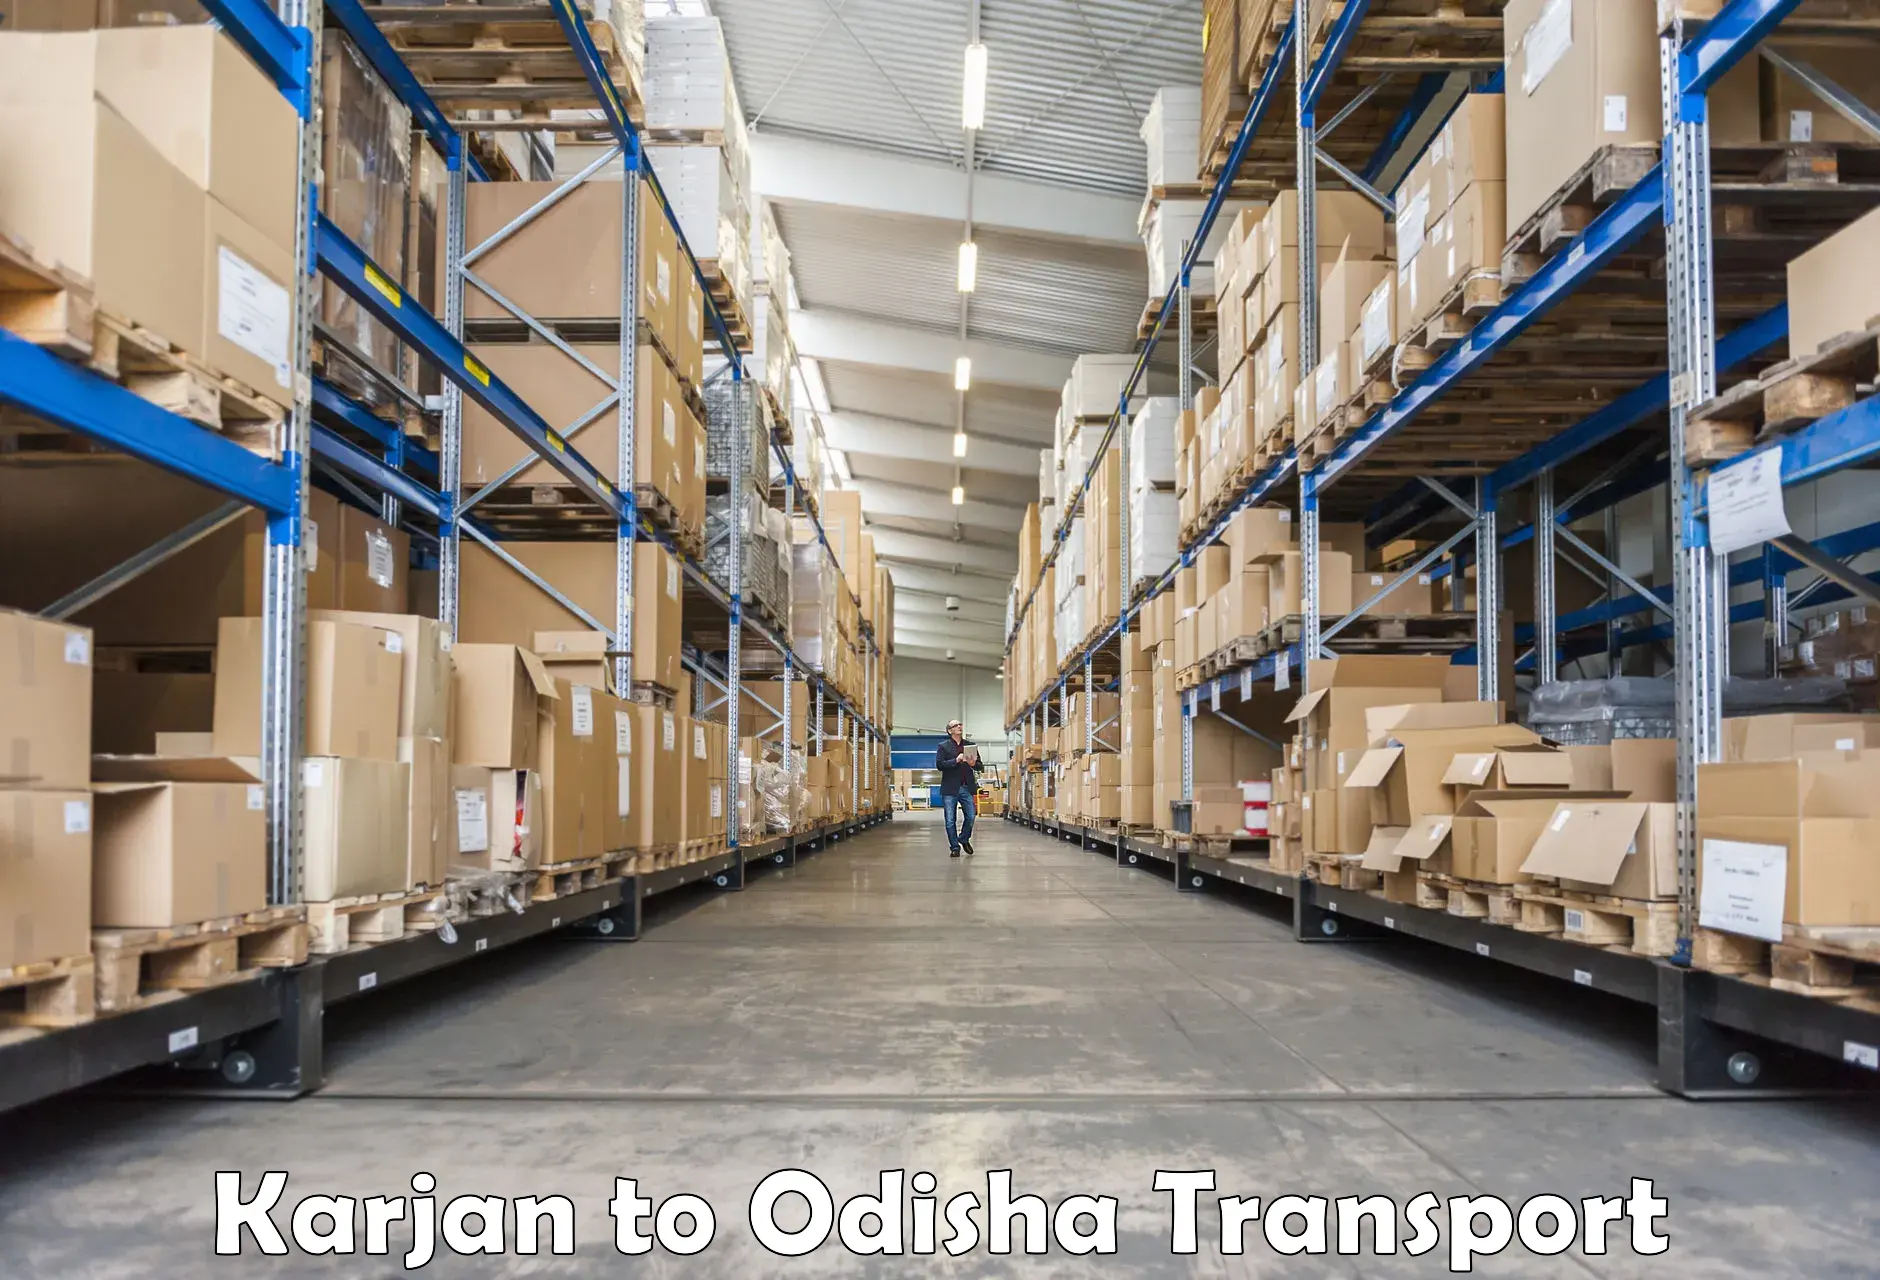 Vehicle transport services Karjan to Koraput